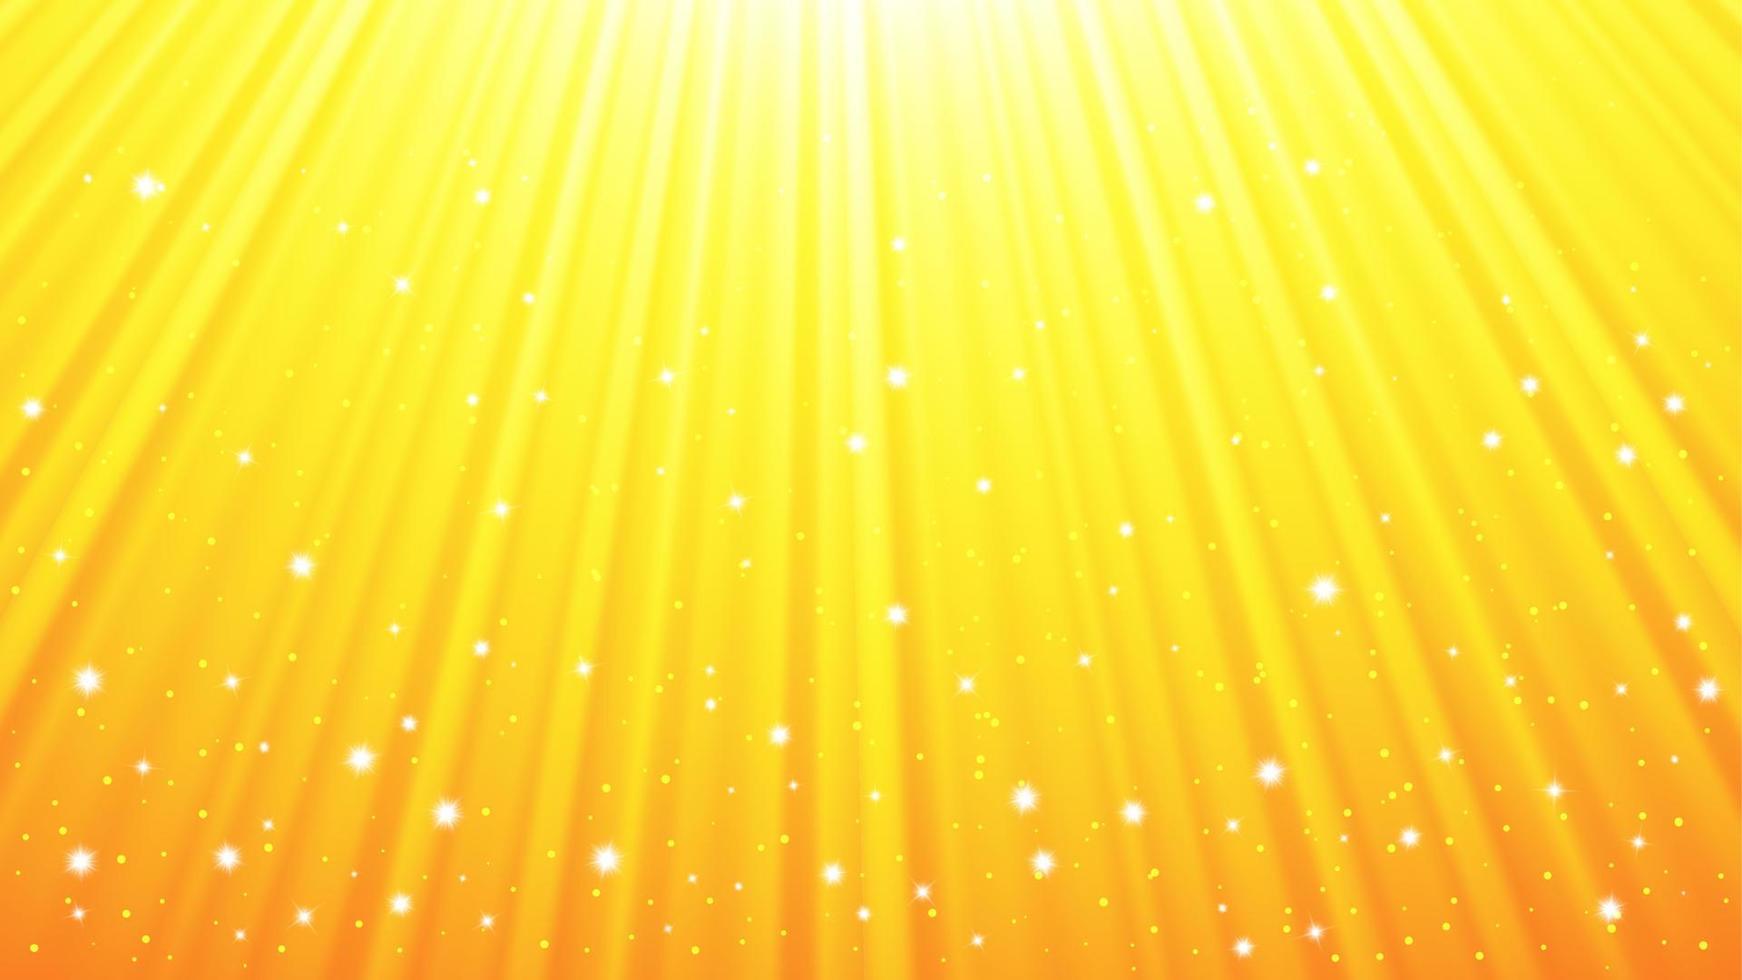 fond de rayons de soleil avec effets de lumière. fond jaune avec lumière d'éclat. illustration vectorielle vecteur